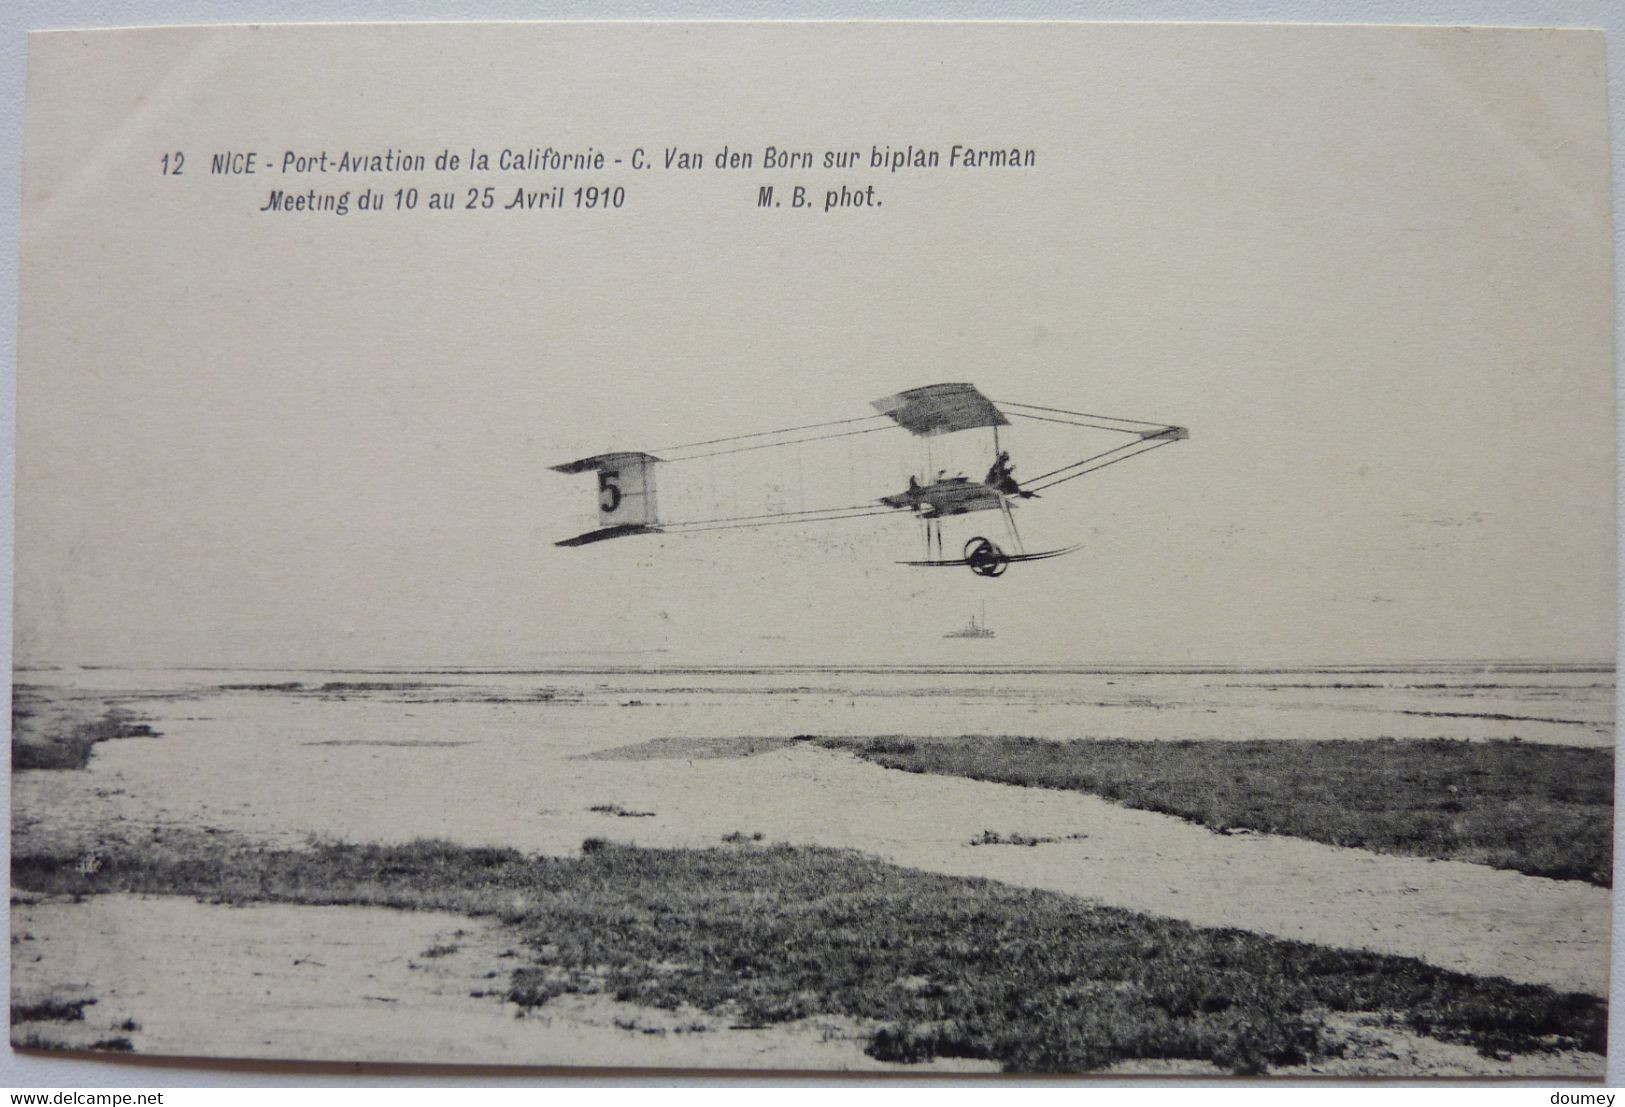 C. VAN DEN BORN SUR BIPLAN FARMAN - MEETING DU 10 AU 25 AVRIL 1910 - PORT-AVIATION DE LA CALIFORNIE - NICE - Transport (air) - Airport